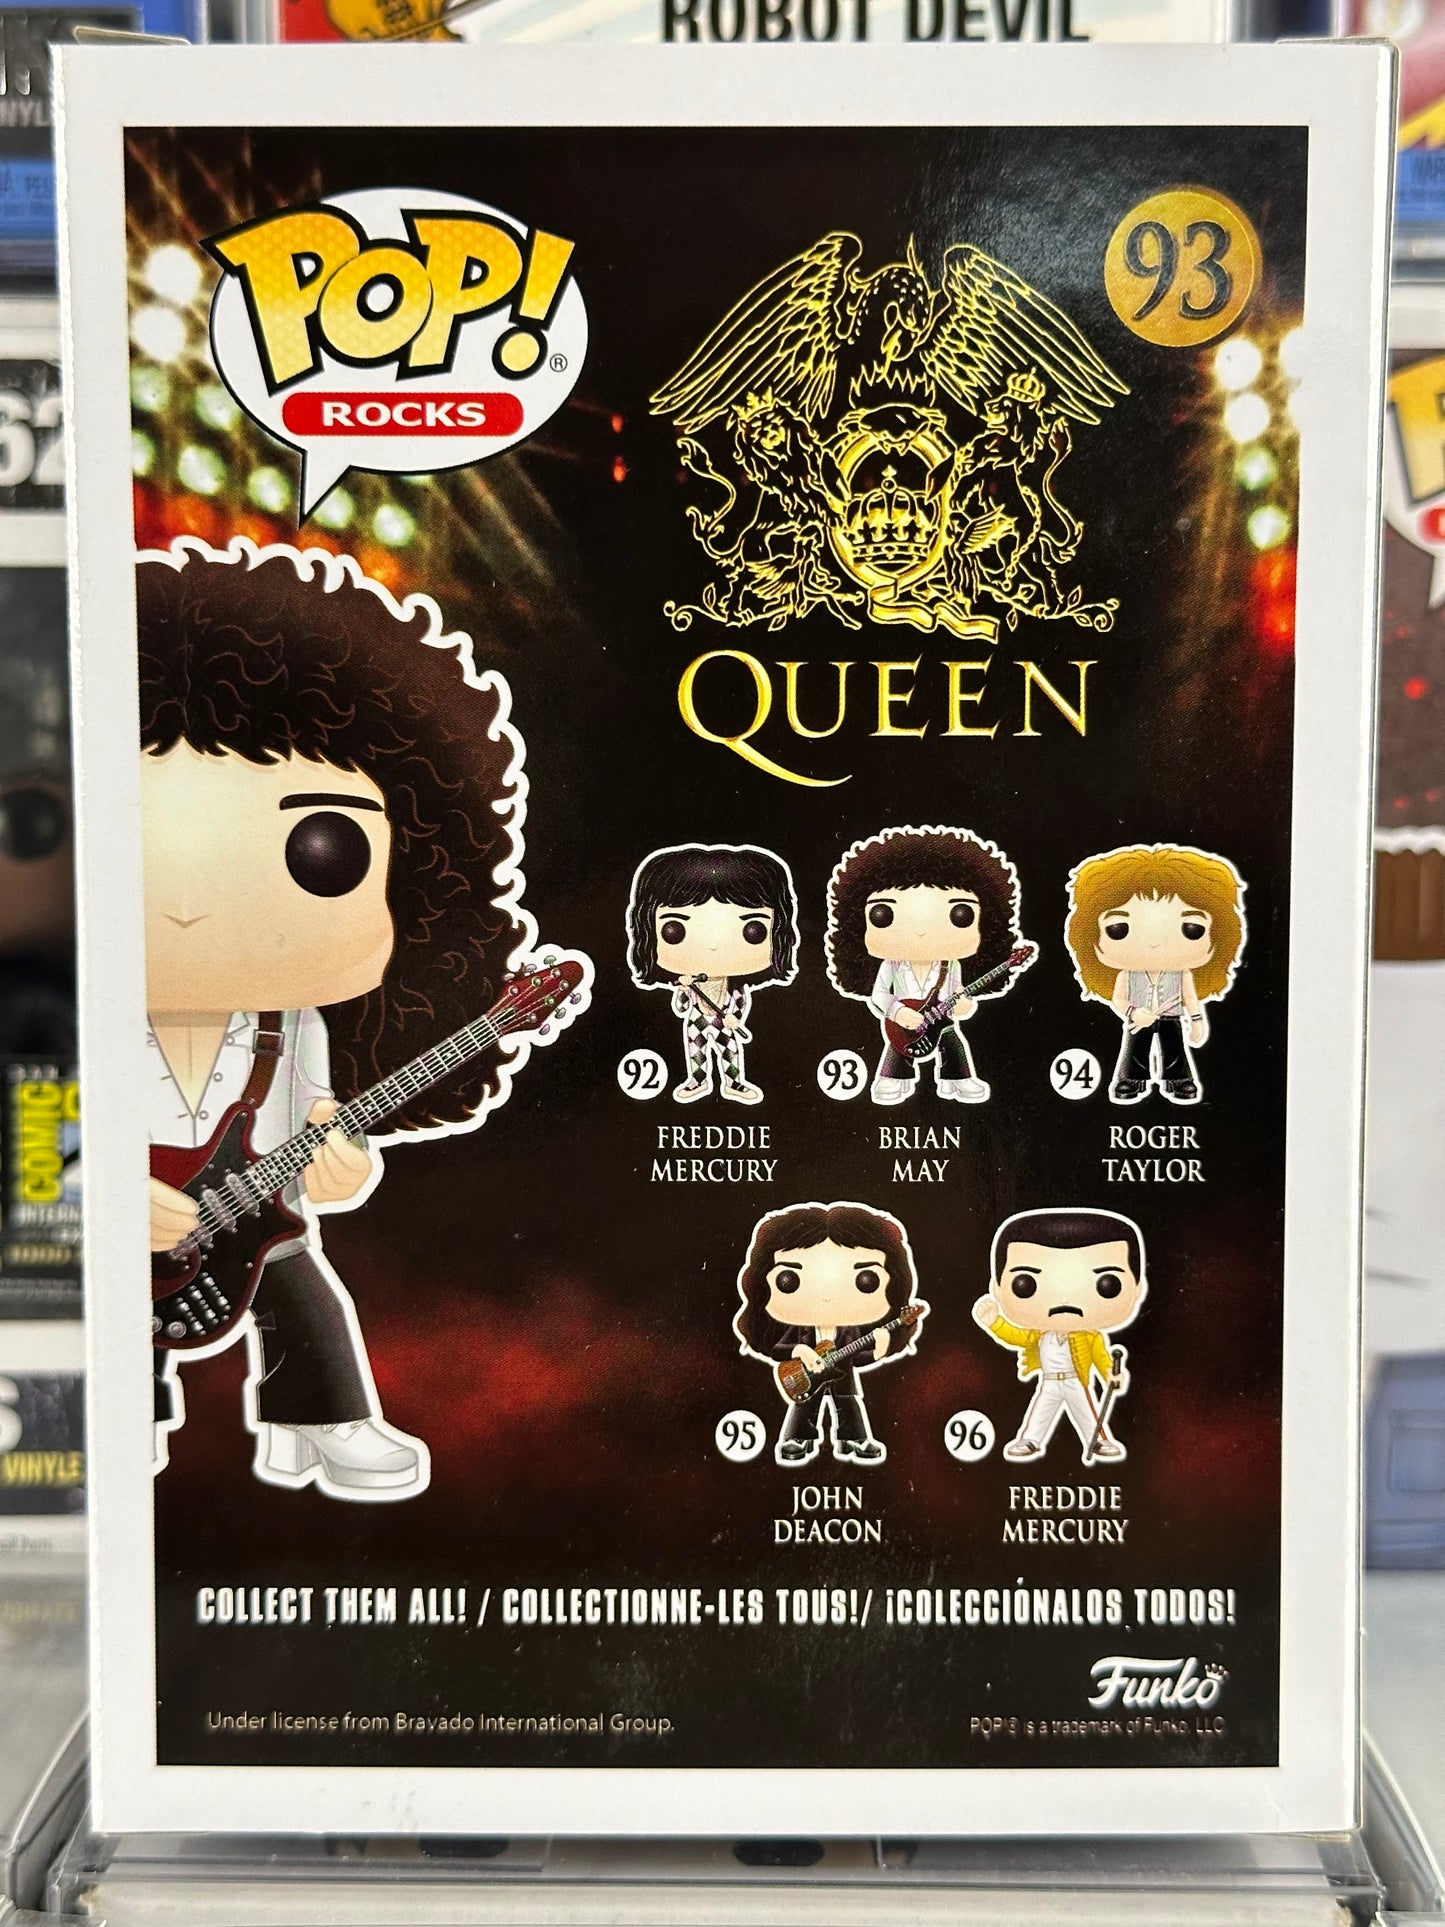 Pop Rocks - Queen - Brian May (93)